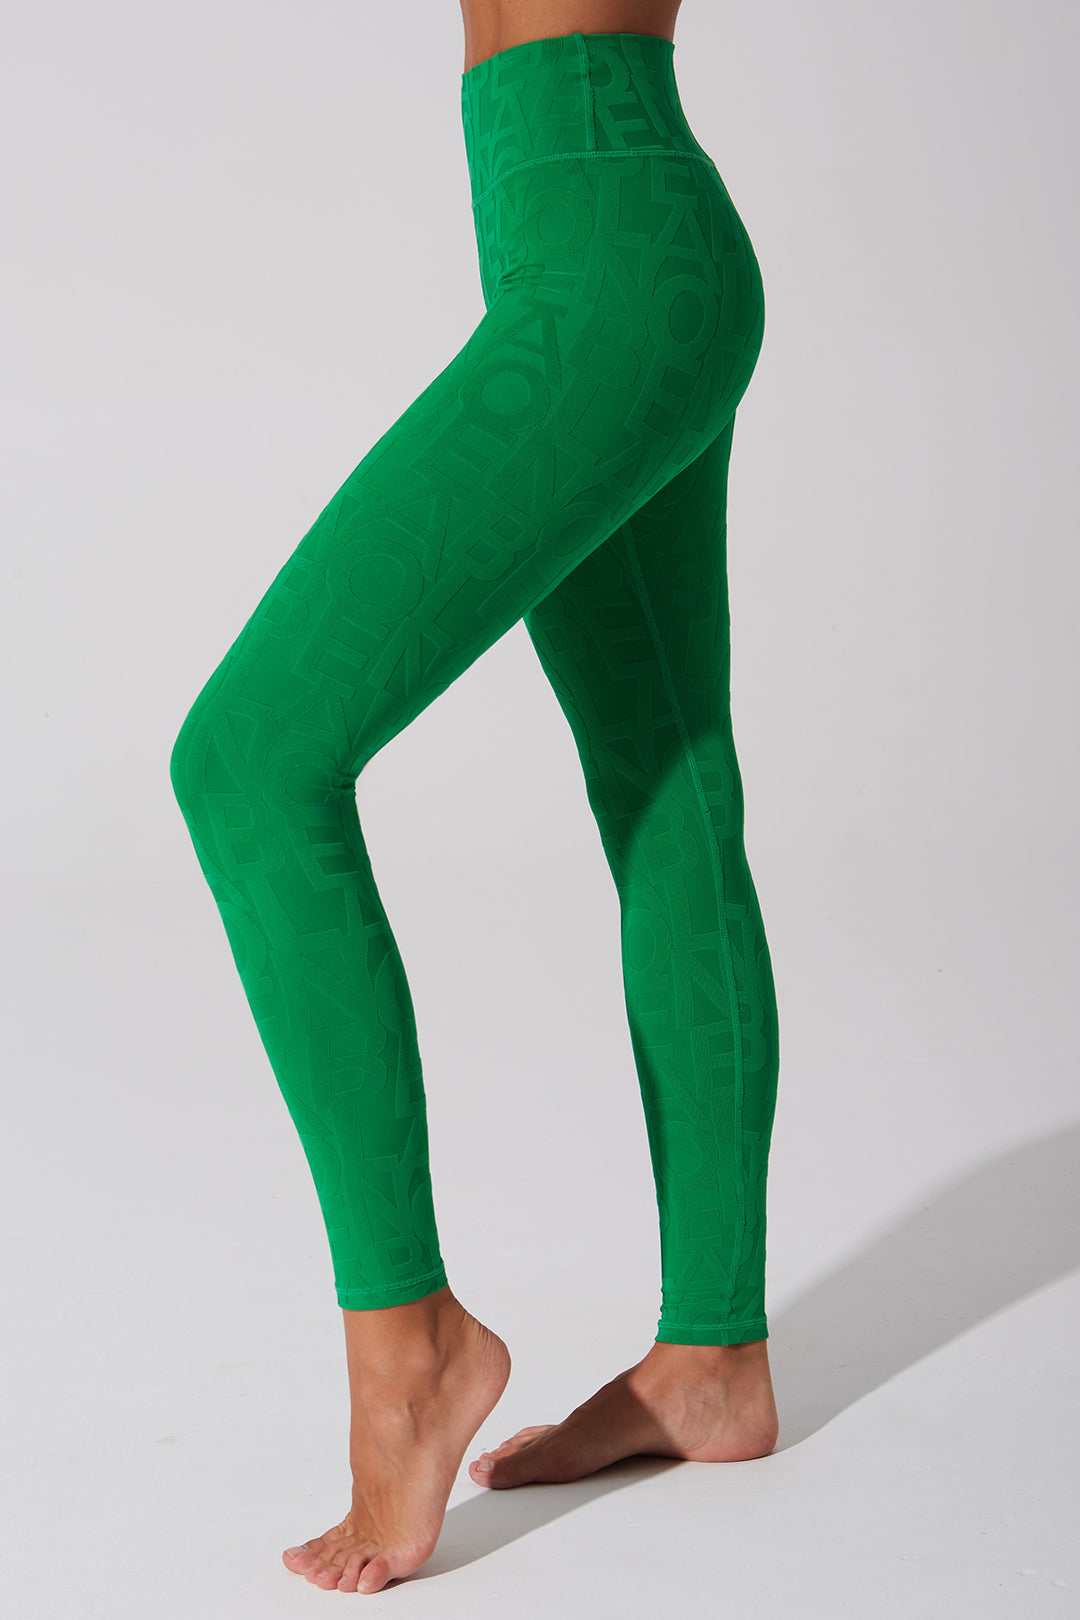 Dark green women's leggings with a 3D fleur pattern.